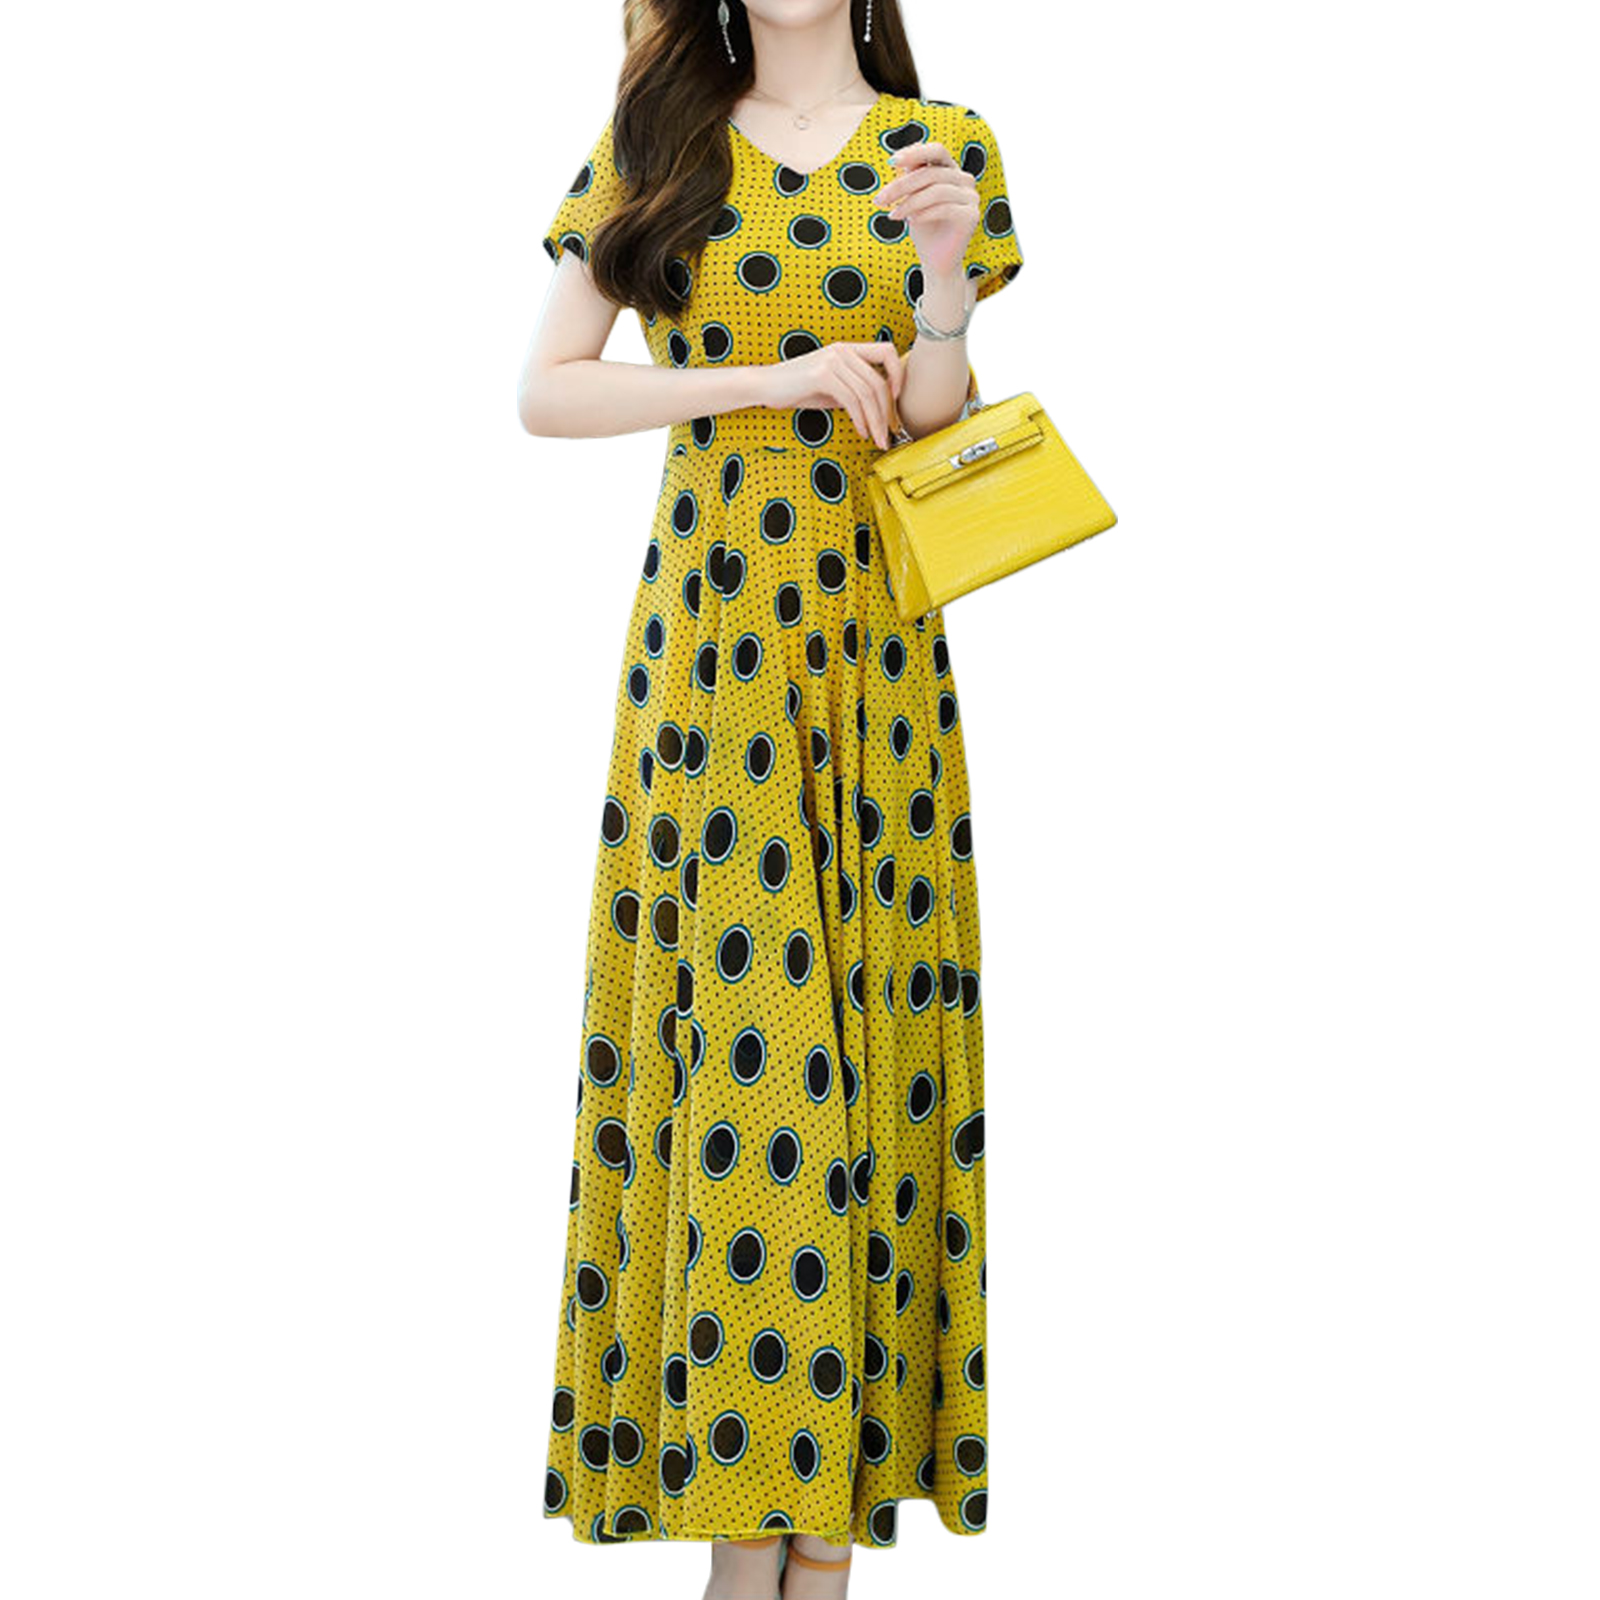 Women V-neck Short Sleeves Dress Polka Dot Printing Slimming A-line Skirt Elegant Beach Dress yellow M